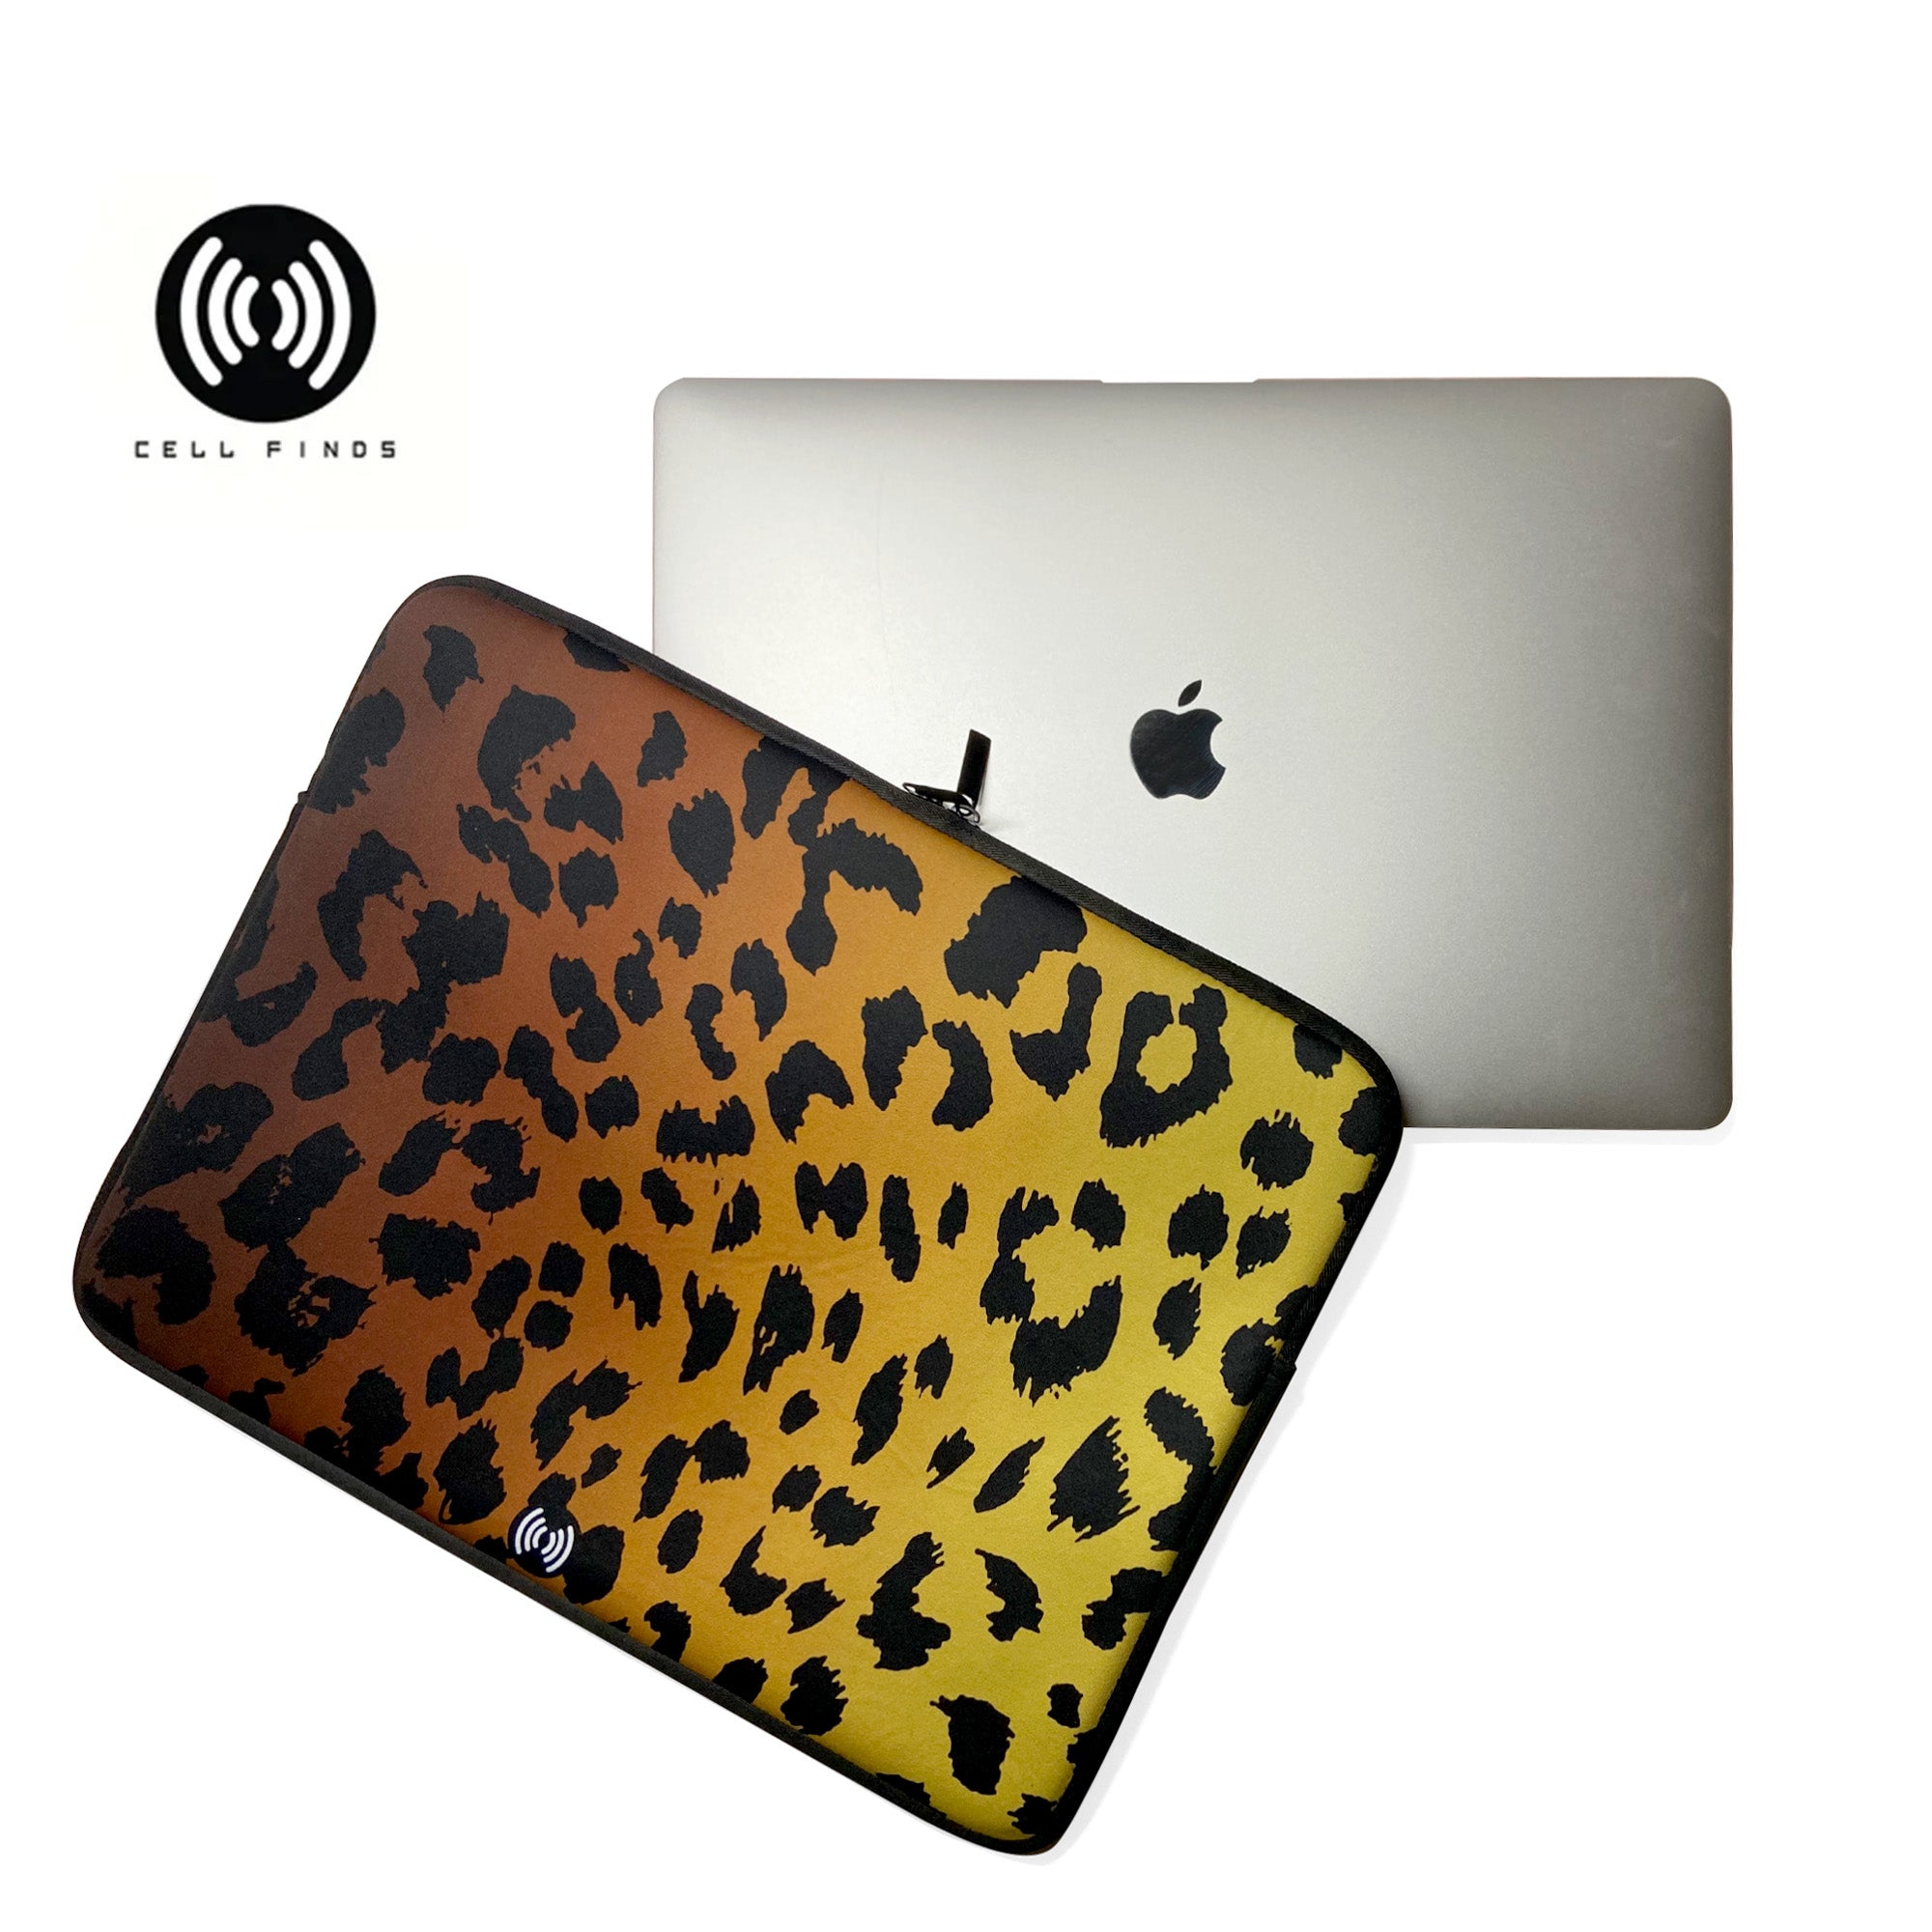 Leopard Laptop Sleeve